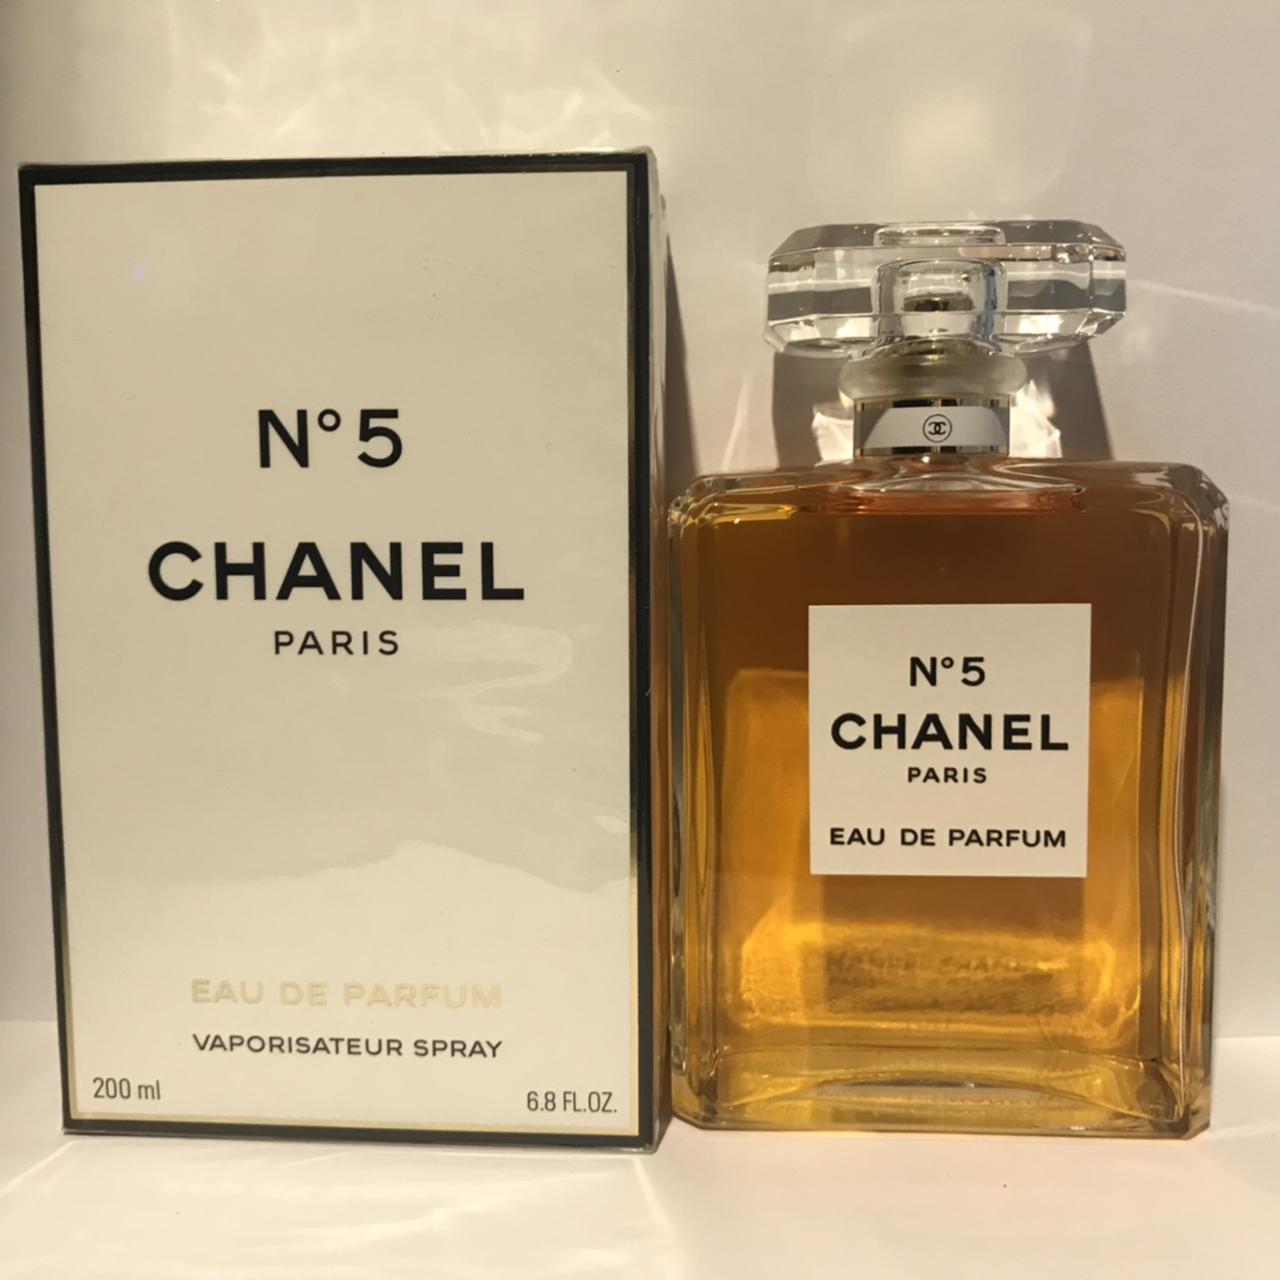 Chanel No5 Eau de Parfum 200ml